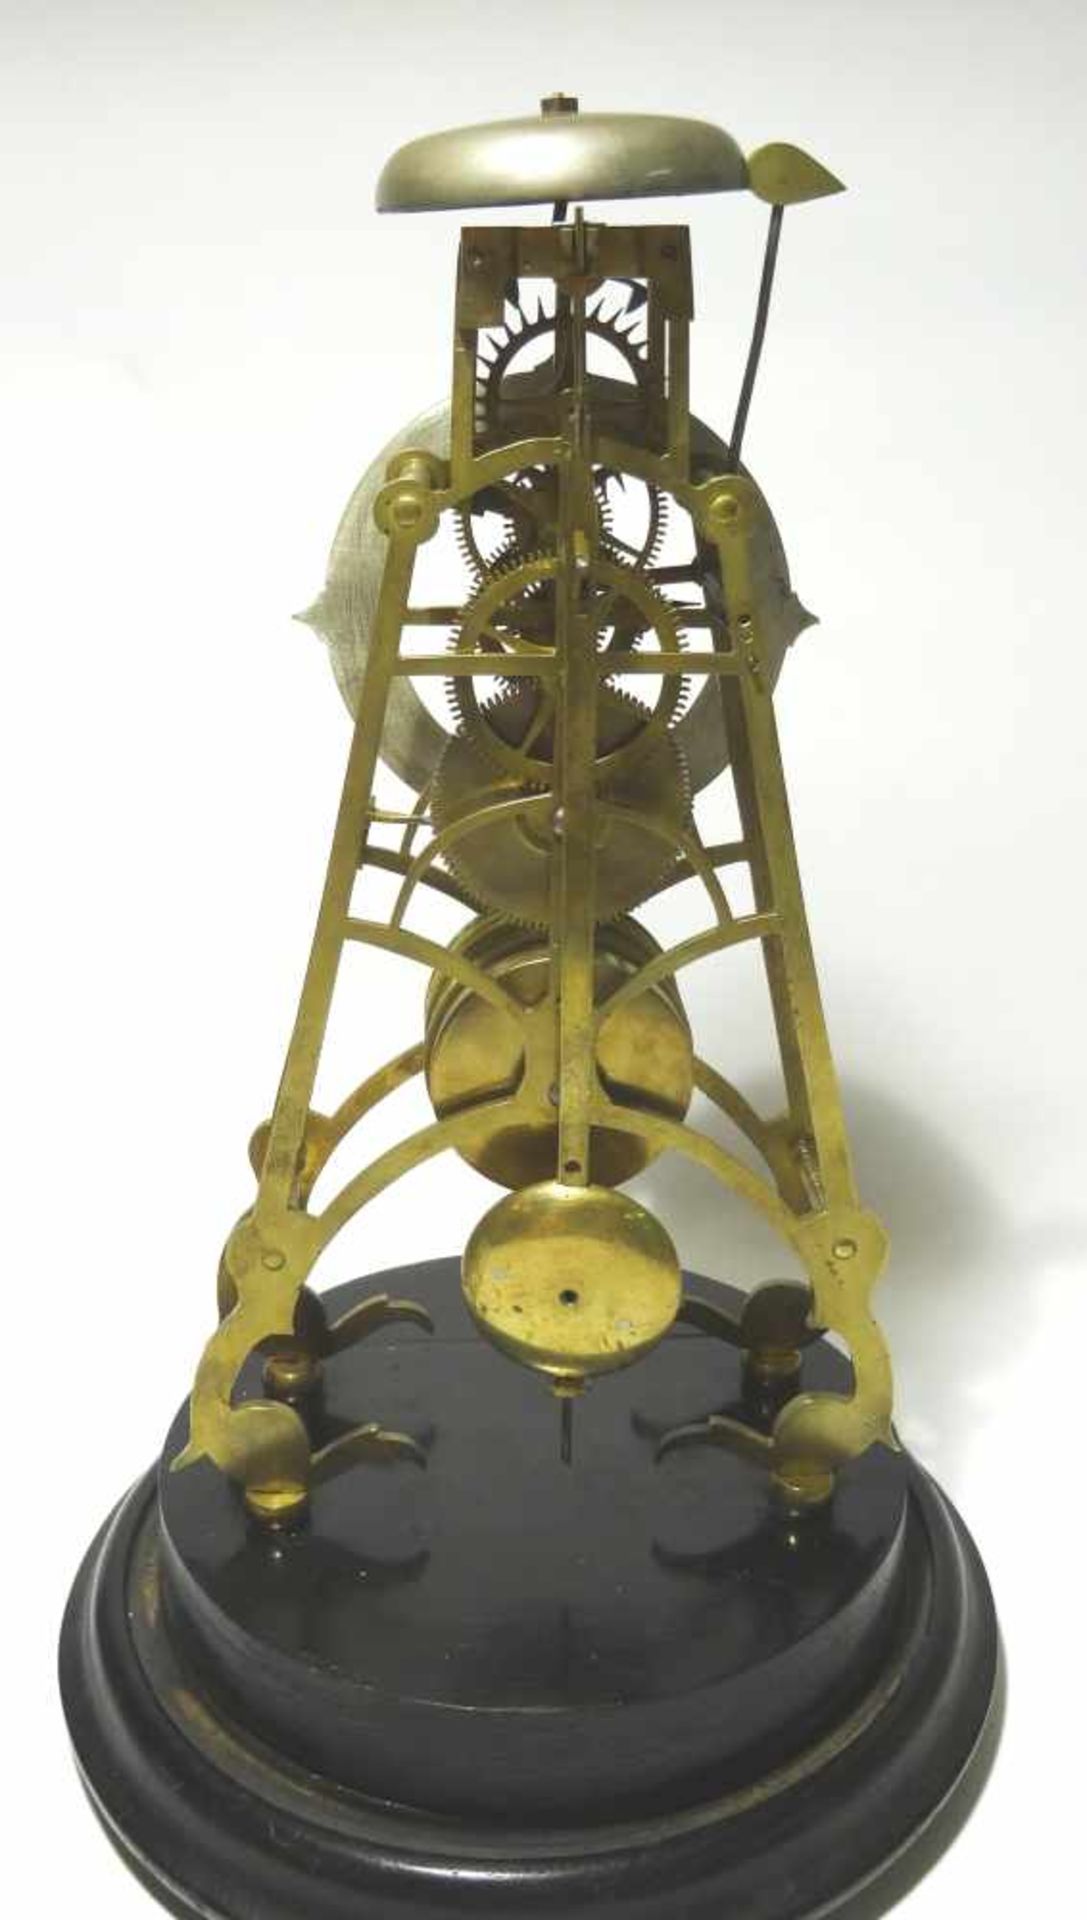 Skelettuhr mit Glasdom sehr schöne alte Skelettuhr mit Hakenhemmung und Stunden Schlag auf Glocke - Bild 5 aus 5